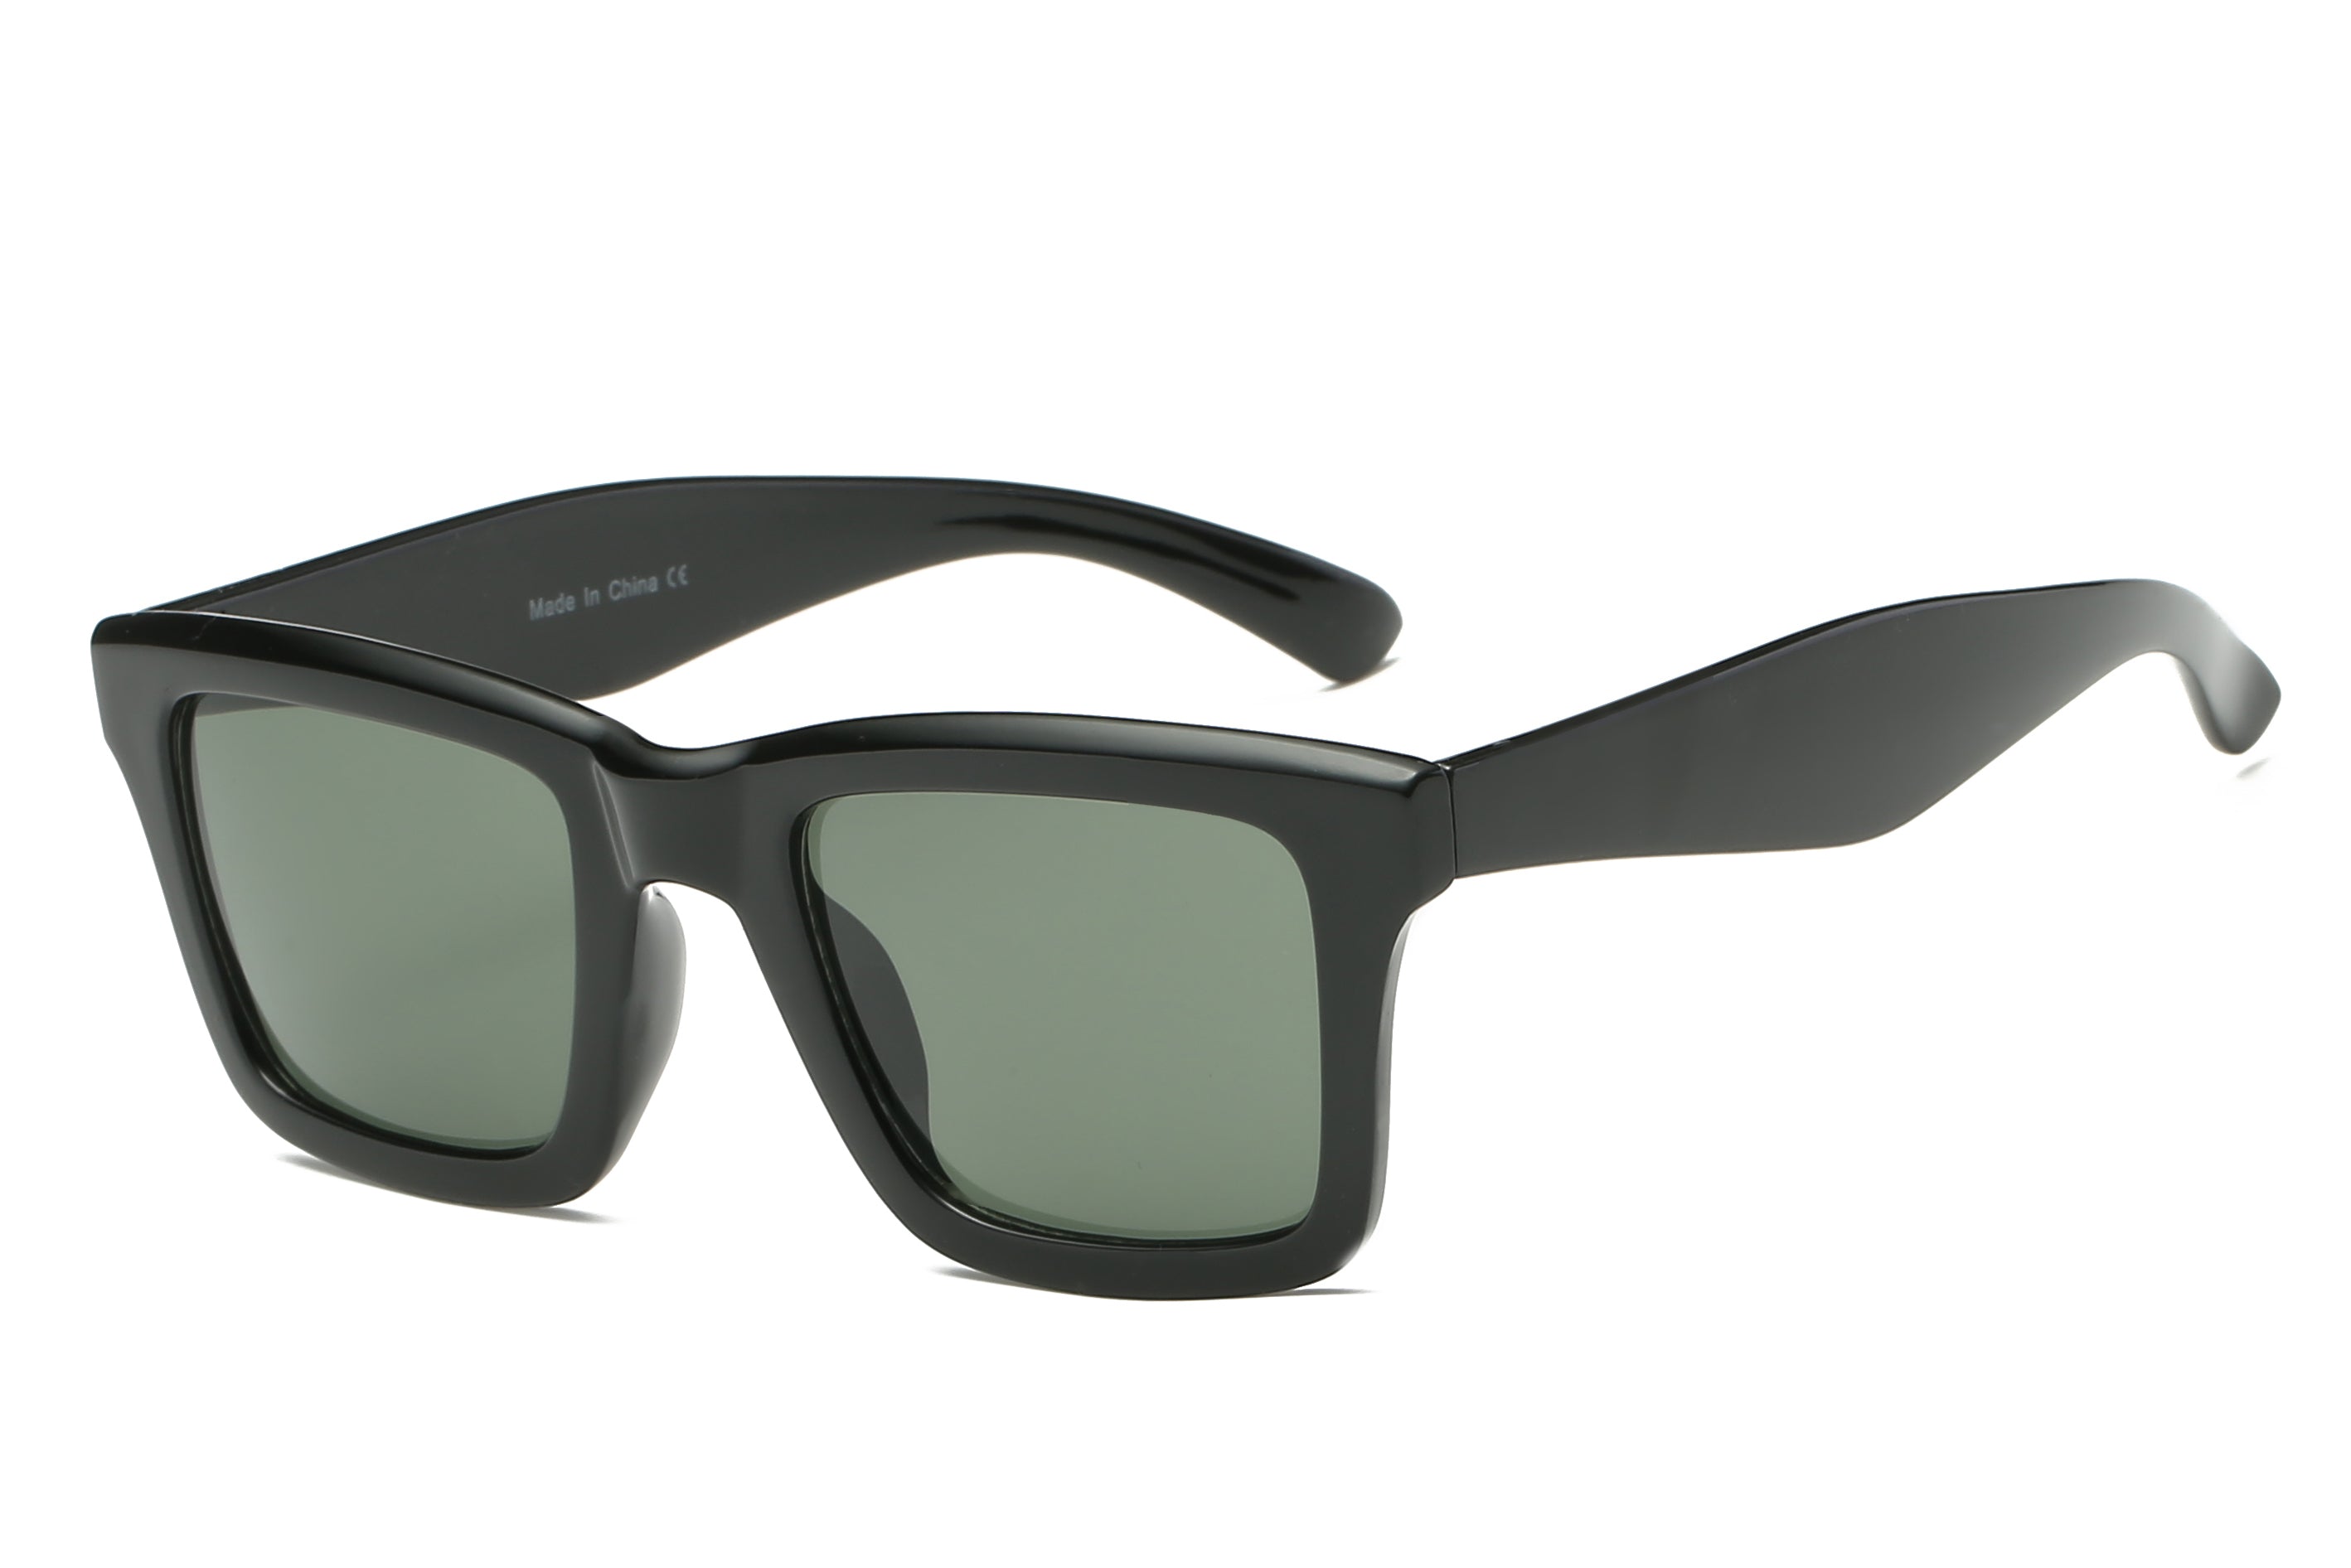 S1058 - Classic Square Retro VINTAGE Sunglasses Black